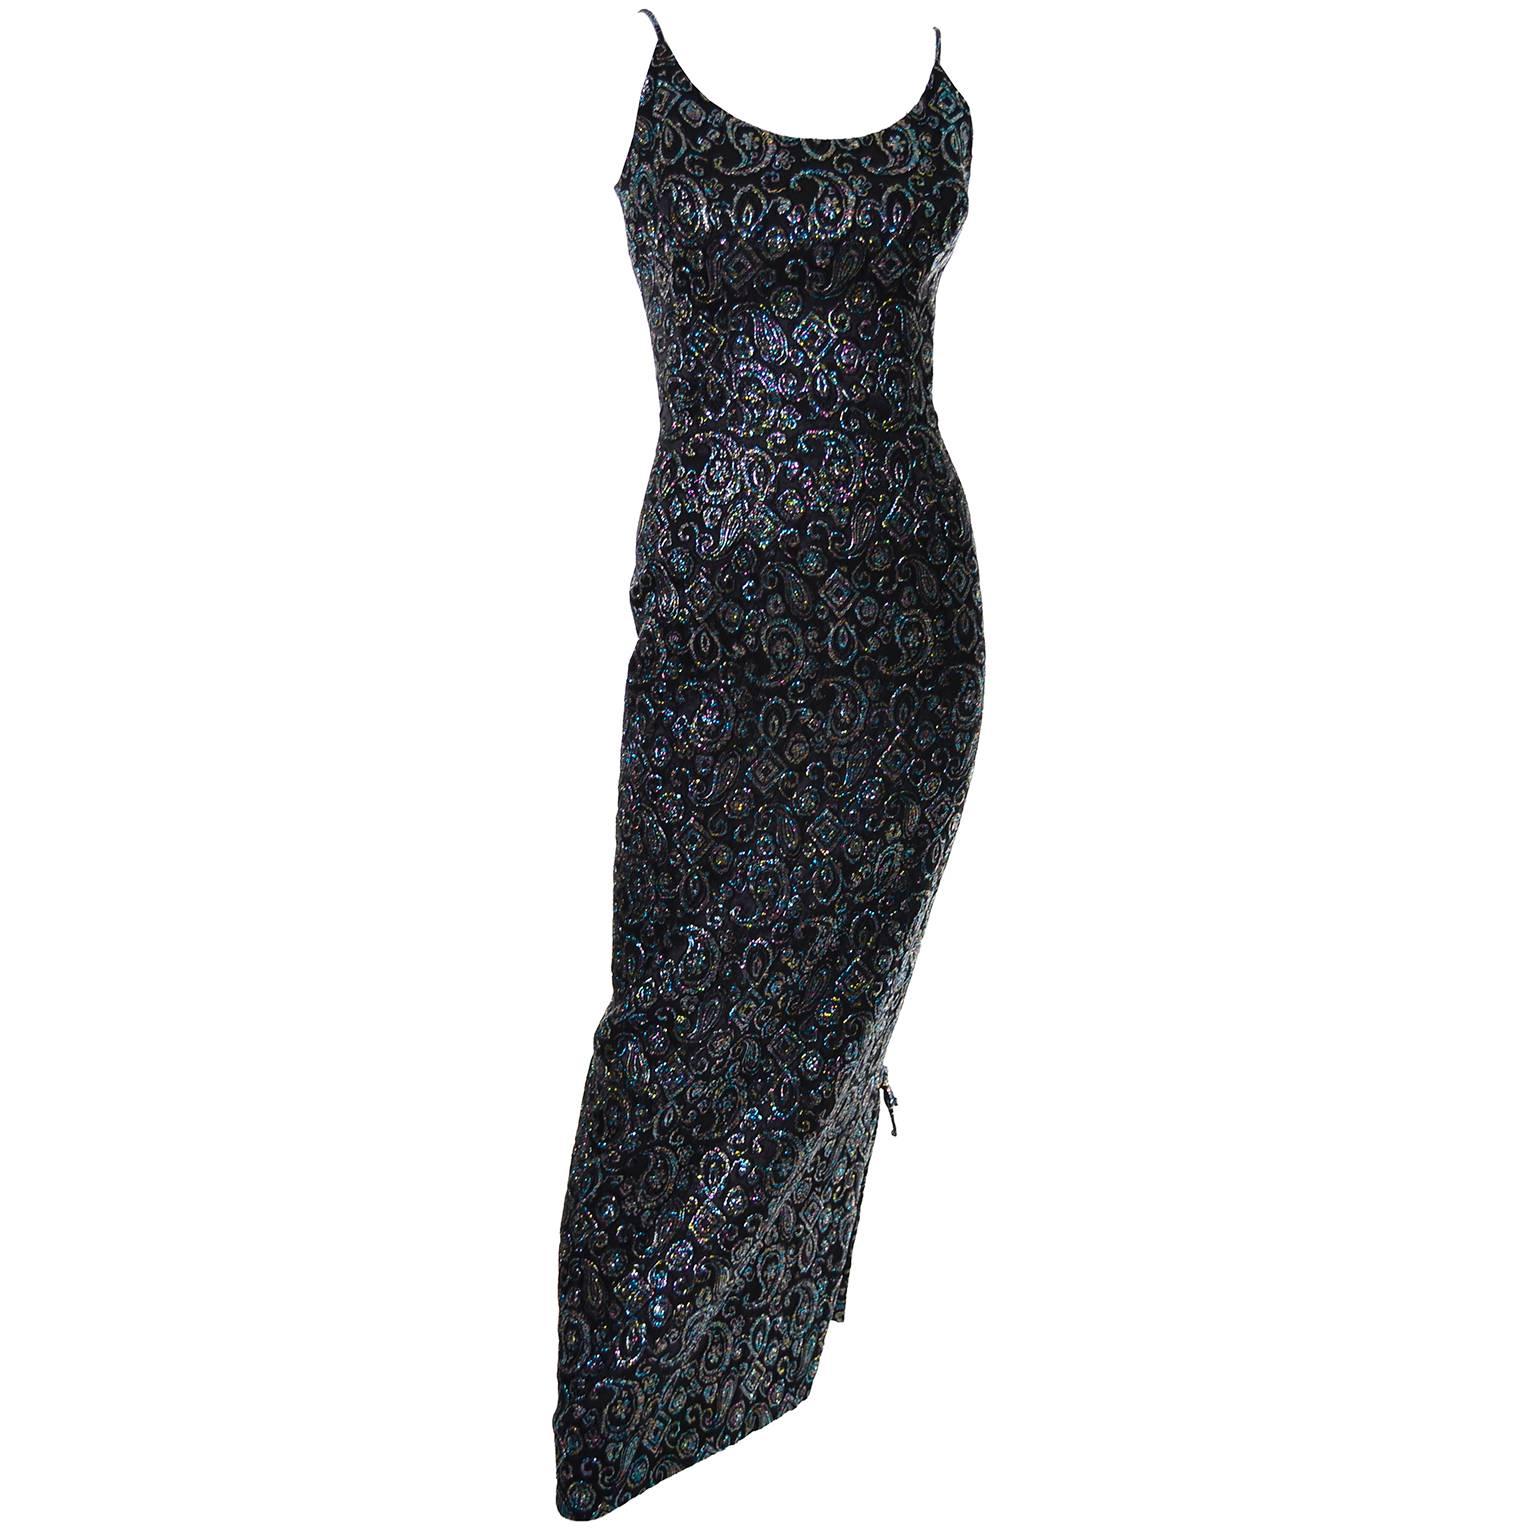 Nicholas Ungar Vintage Dress Metallic Paisley Sparkle Evening Gown 8